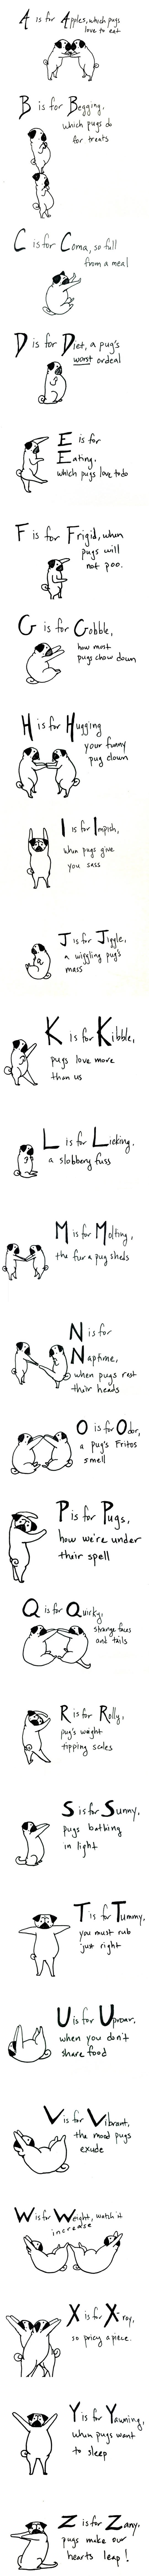 The pug alphabet.